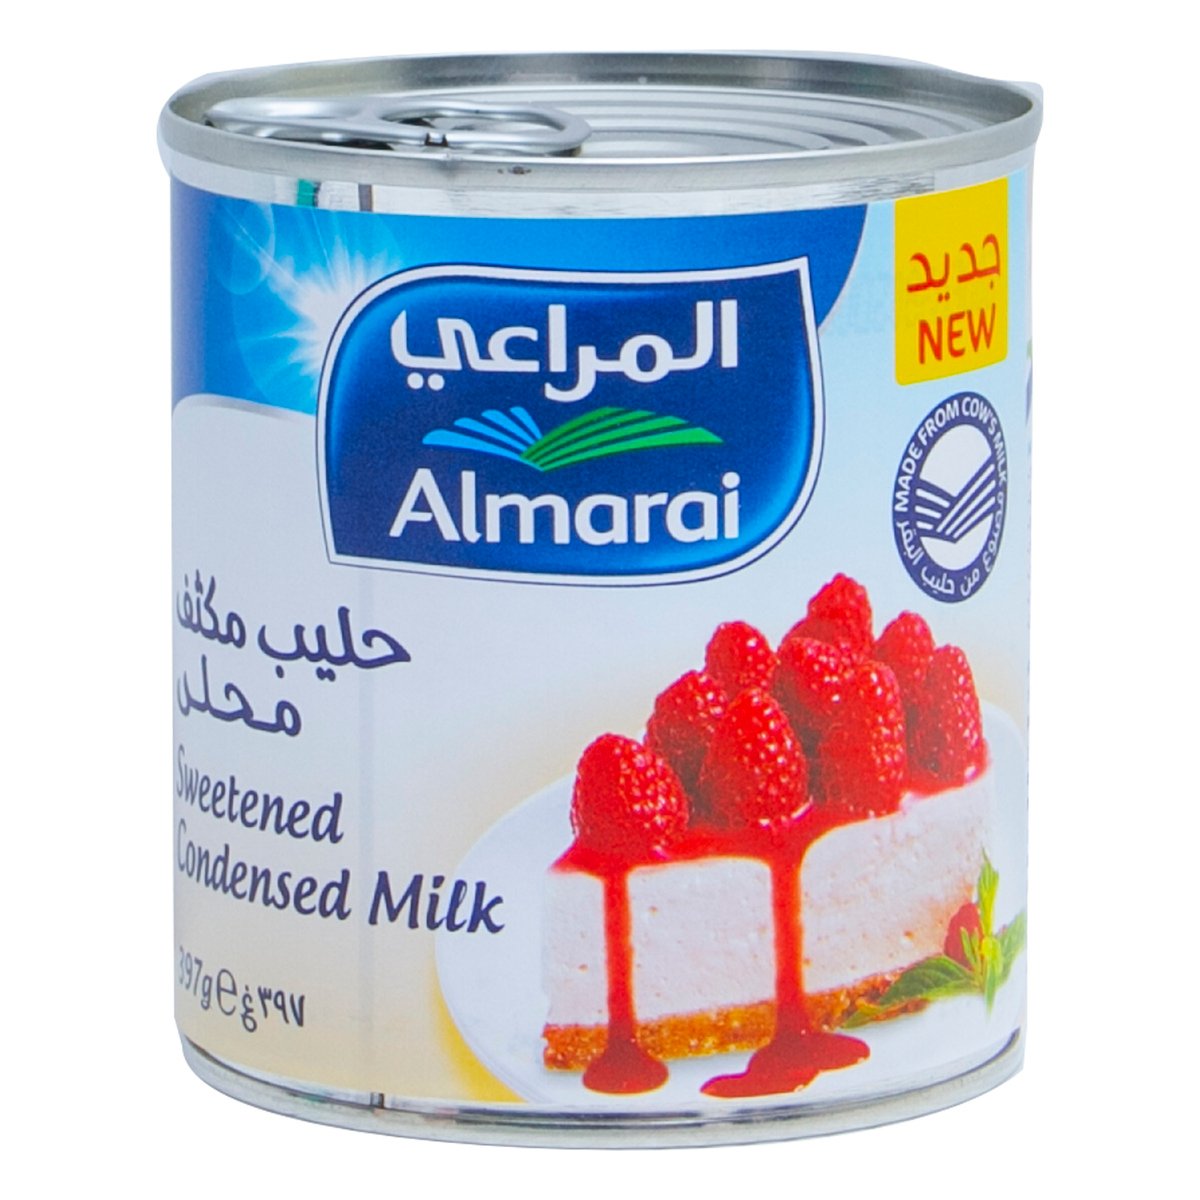 Buy Almarai Sweetened Condensed Milk 397 g Online at Best Price | Condnsd Sweetnd Milk | Lulu Kuwait in Saudi Arabia